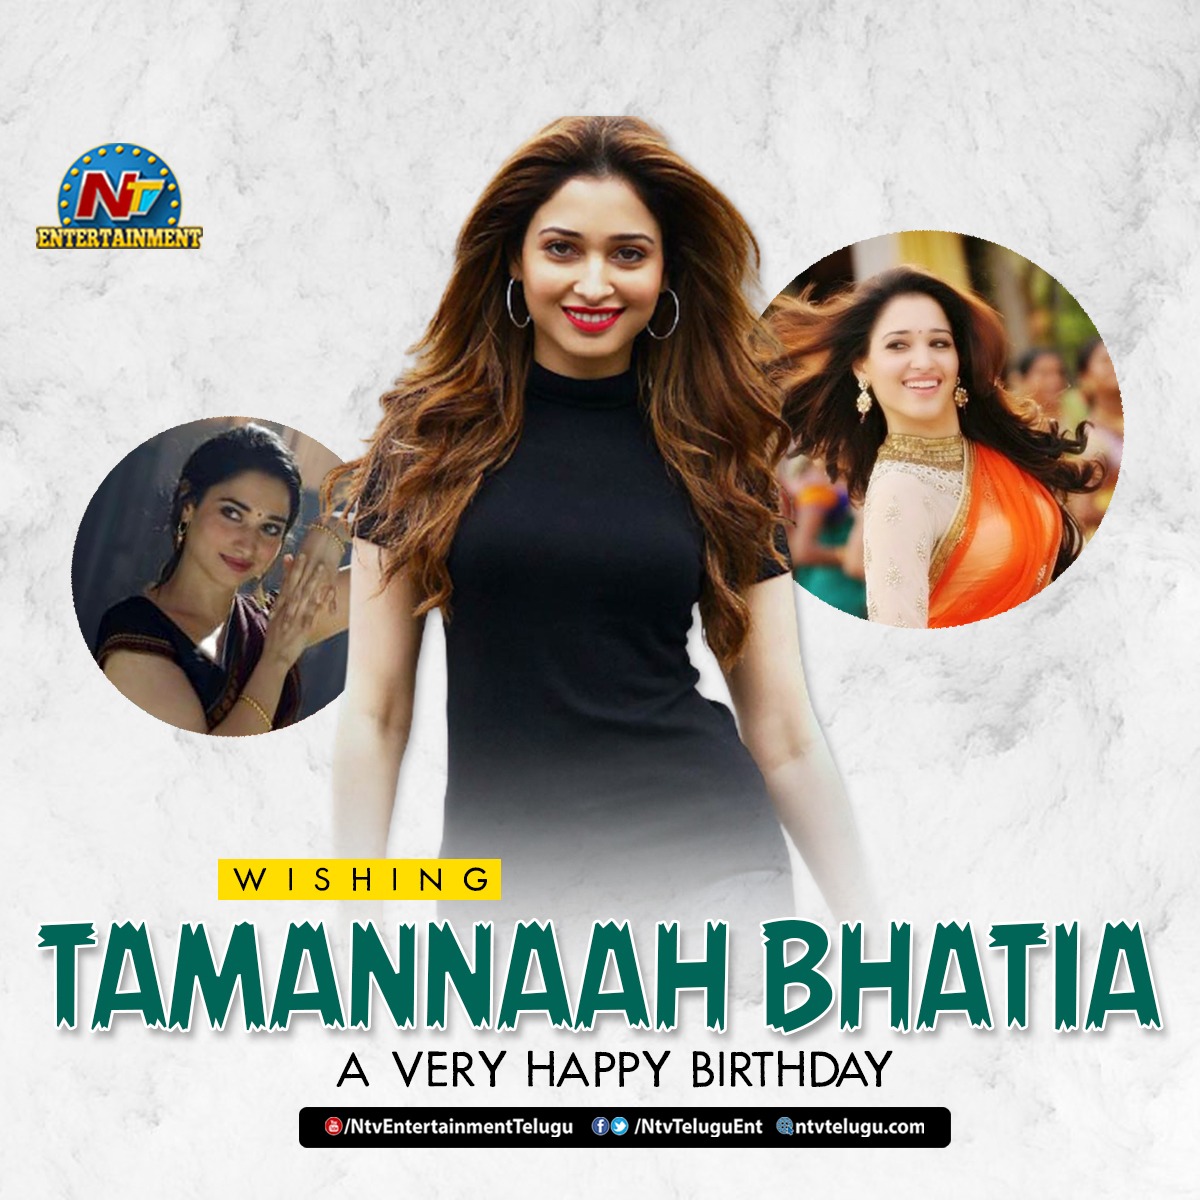 Wishing Tamannaah Bhatia a Very Happy Birthday!     